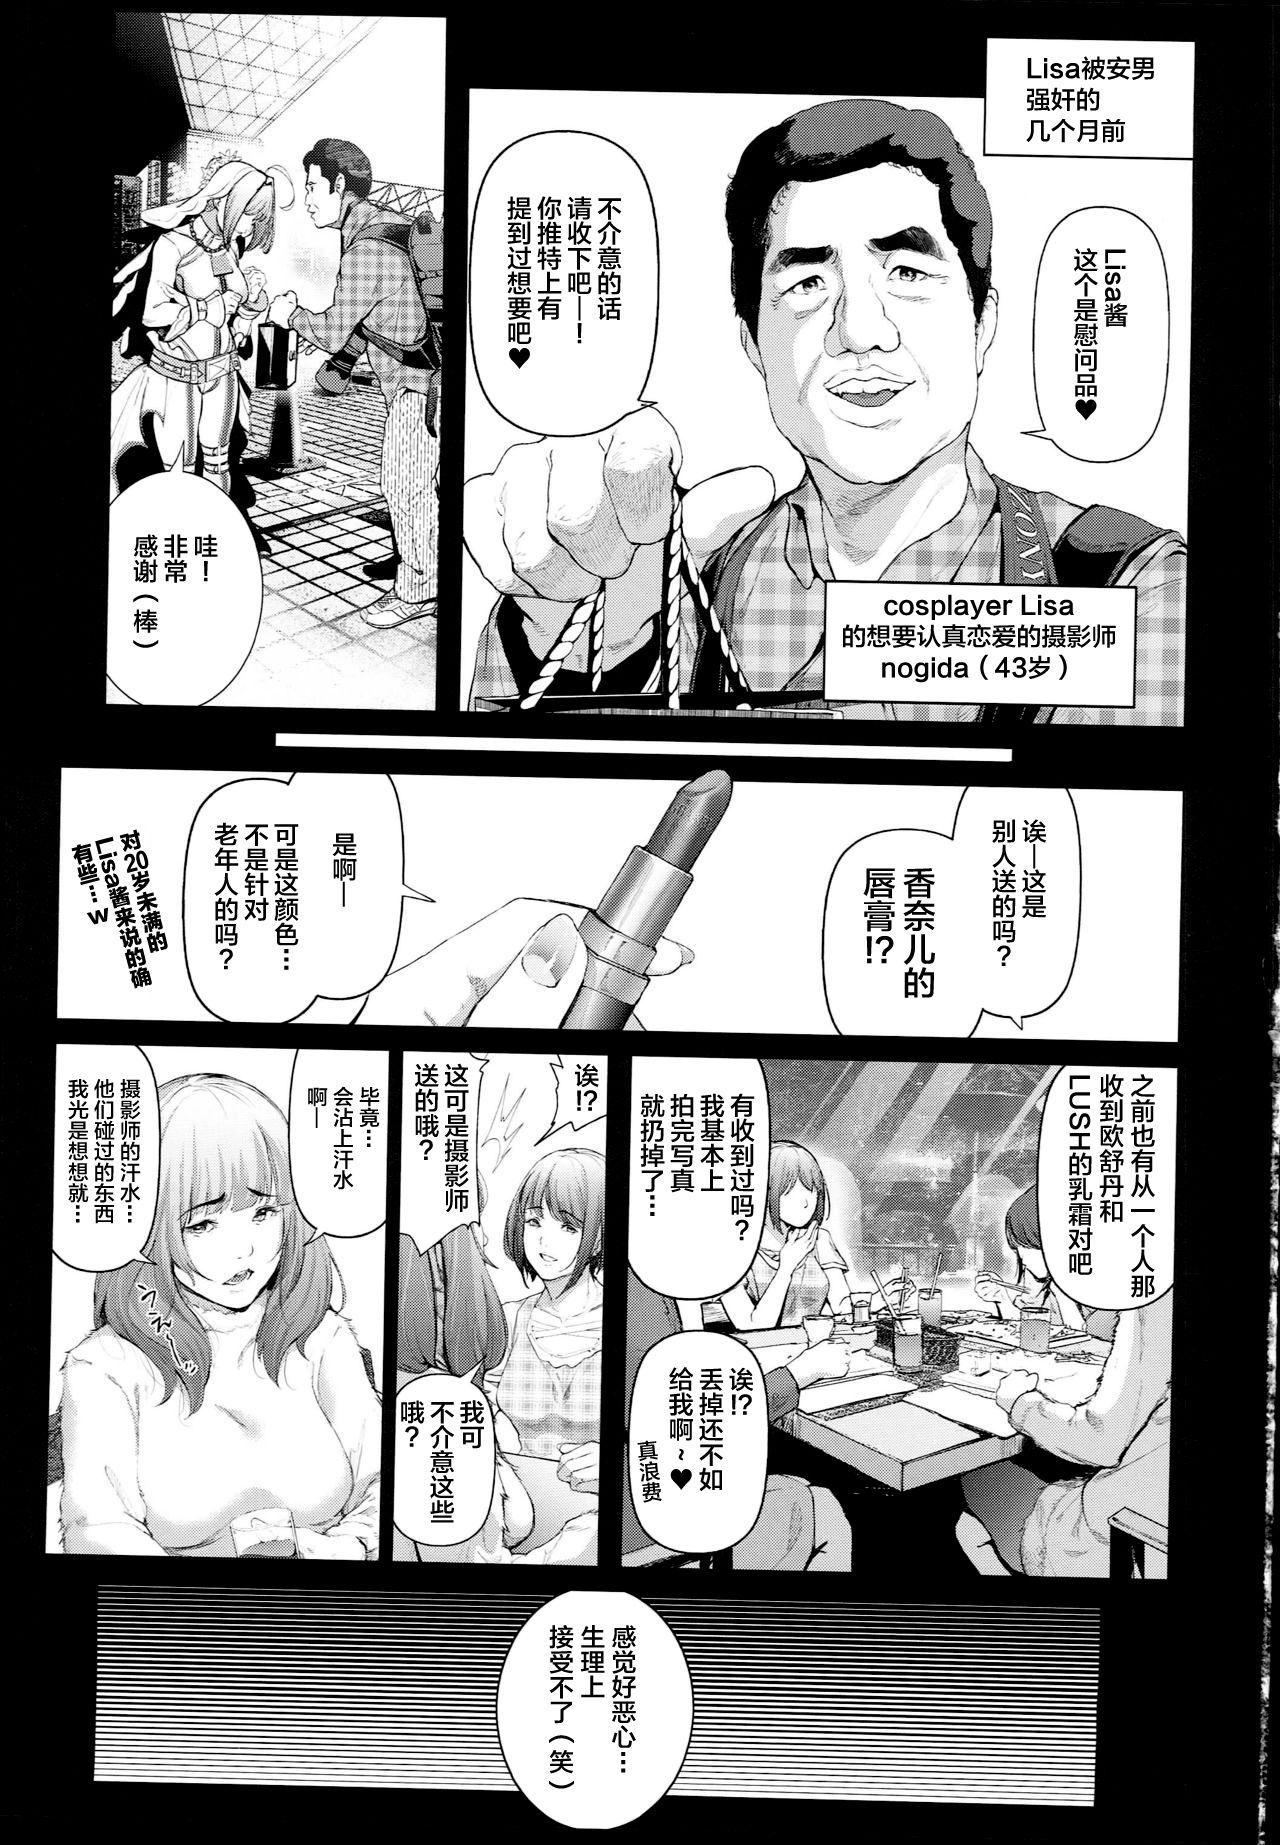 Cos wa Midara na Kamen - Ninki Cosplayer Nakayoshi Group Kinikuwanai FGO Cos Namaiki Layer o Rape Satsuei Hen 2